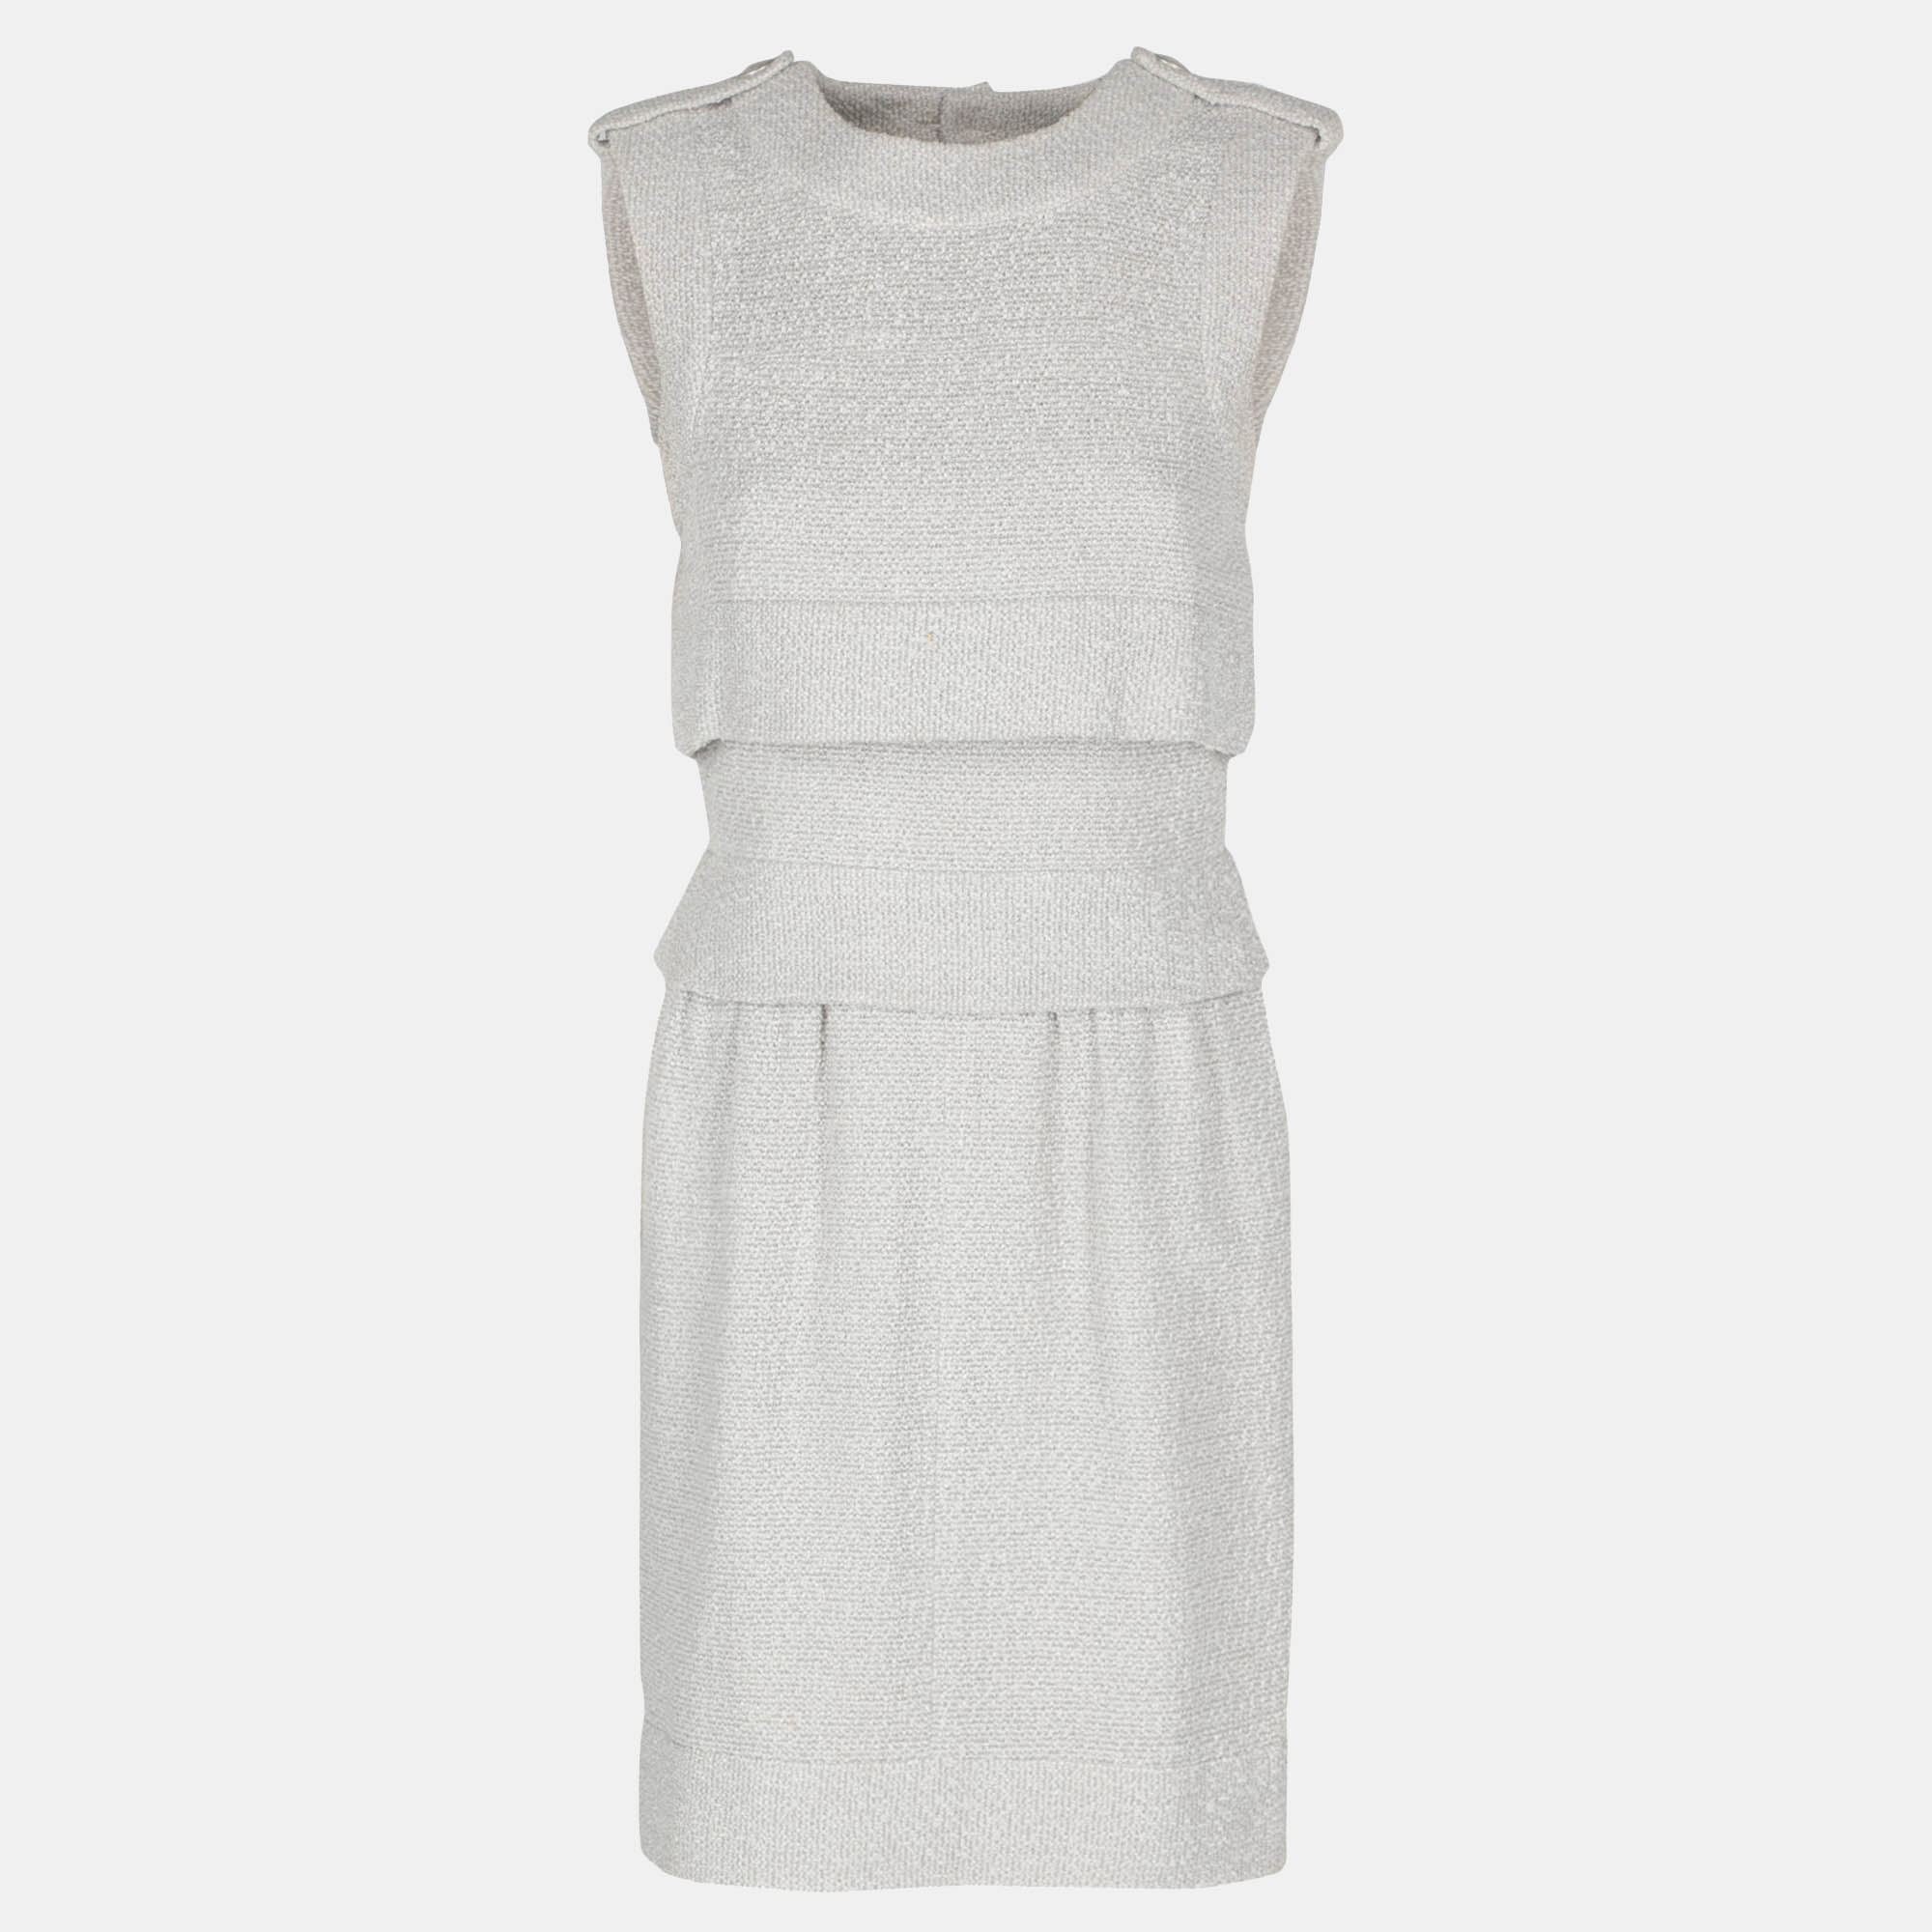 Chanel  Women's Synthetic Fibers Mini Dress - Grey - S